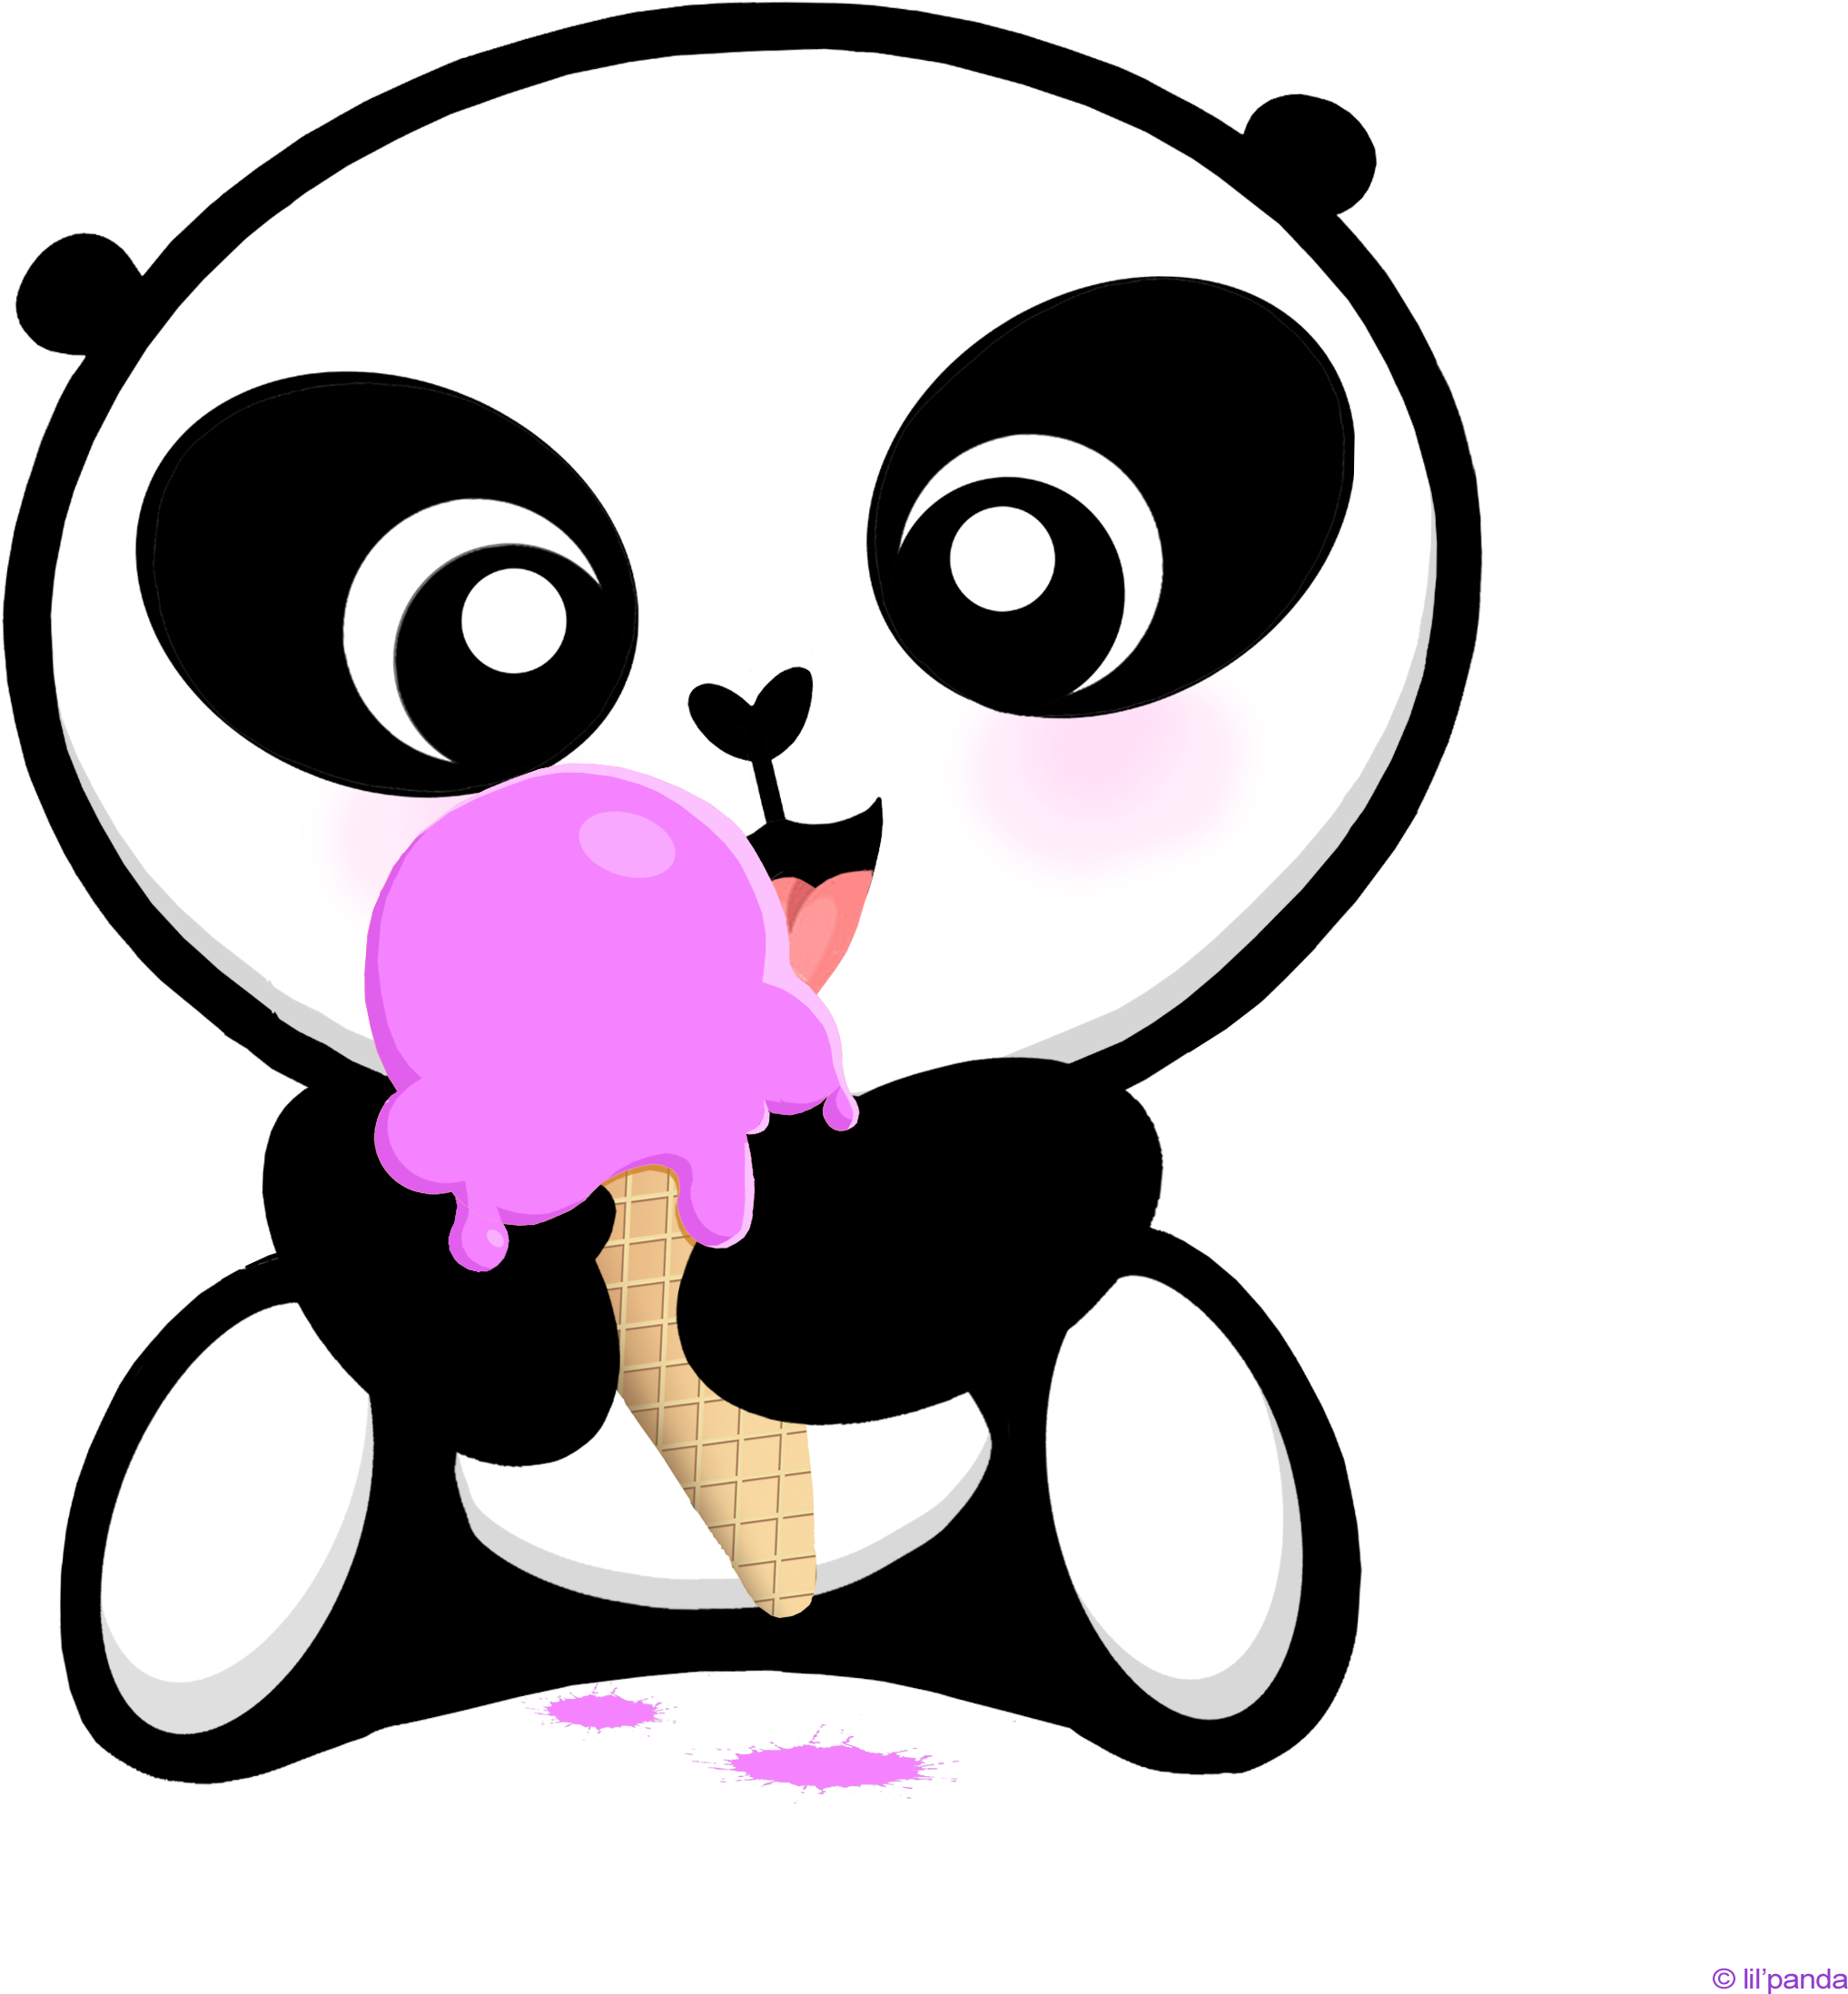 Ice Clipart Kawaii - Dibujos De Pandas Kawaii - Png Download (2546x2571), Png Download